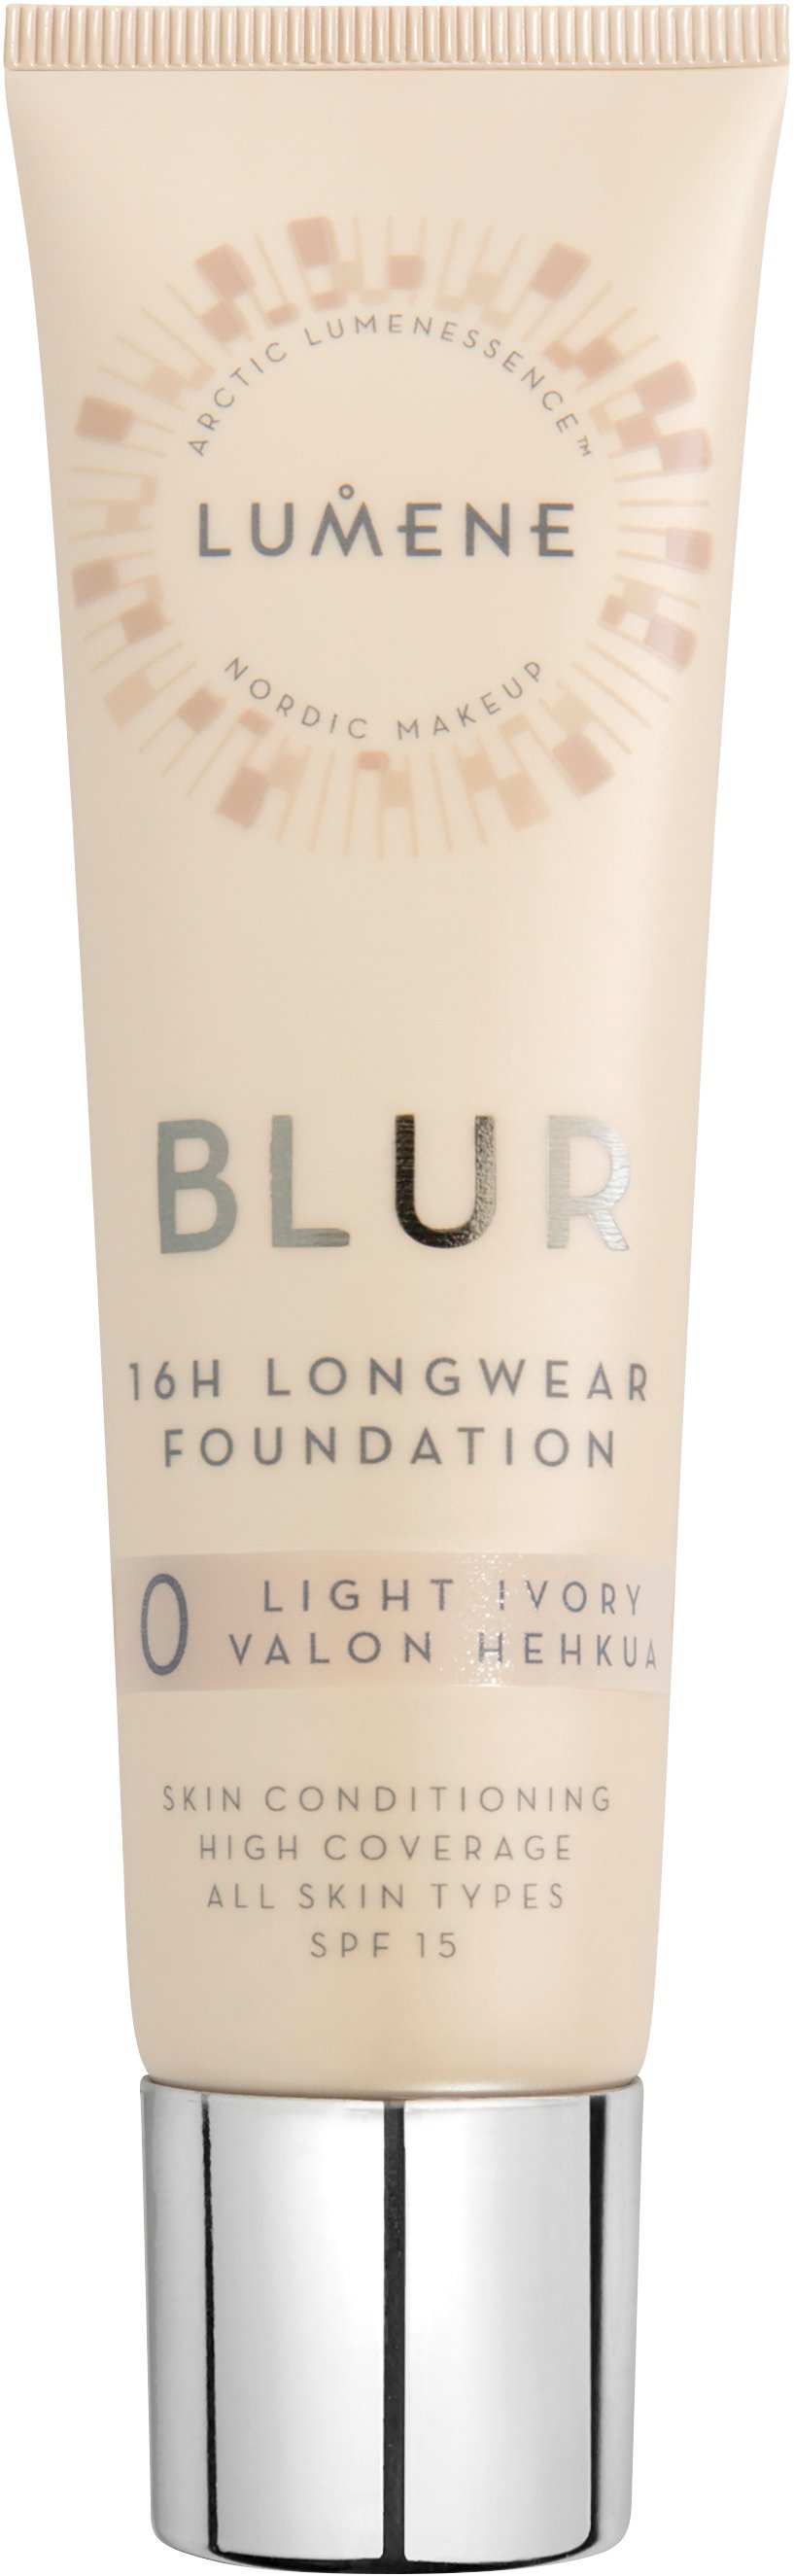 Lumene Blur 16h Longwear Foundation 0 30 ml